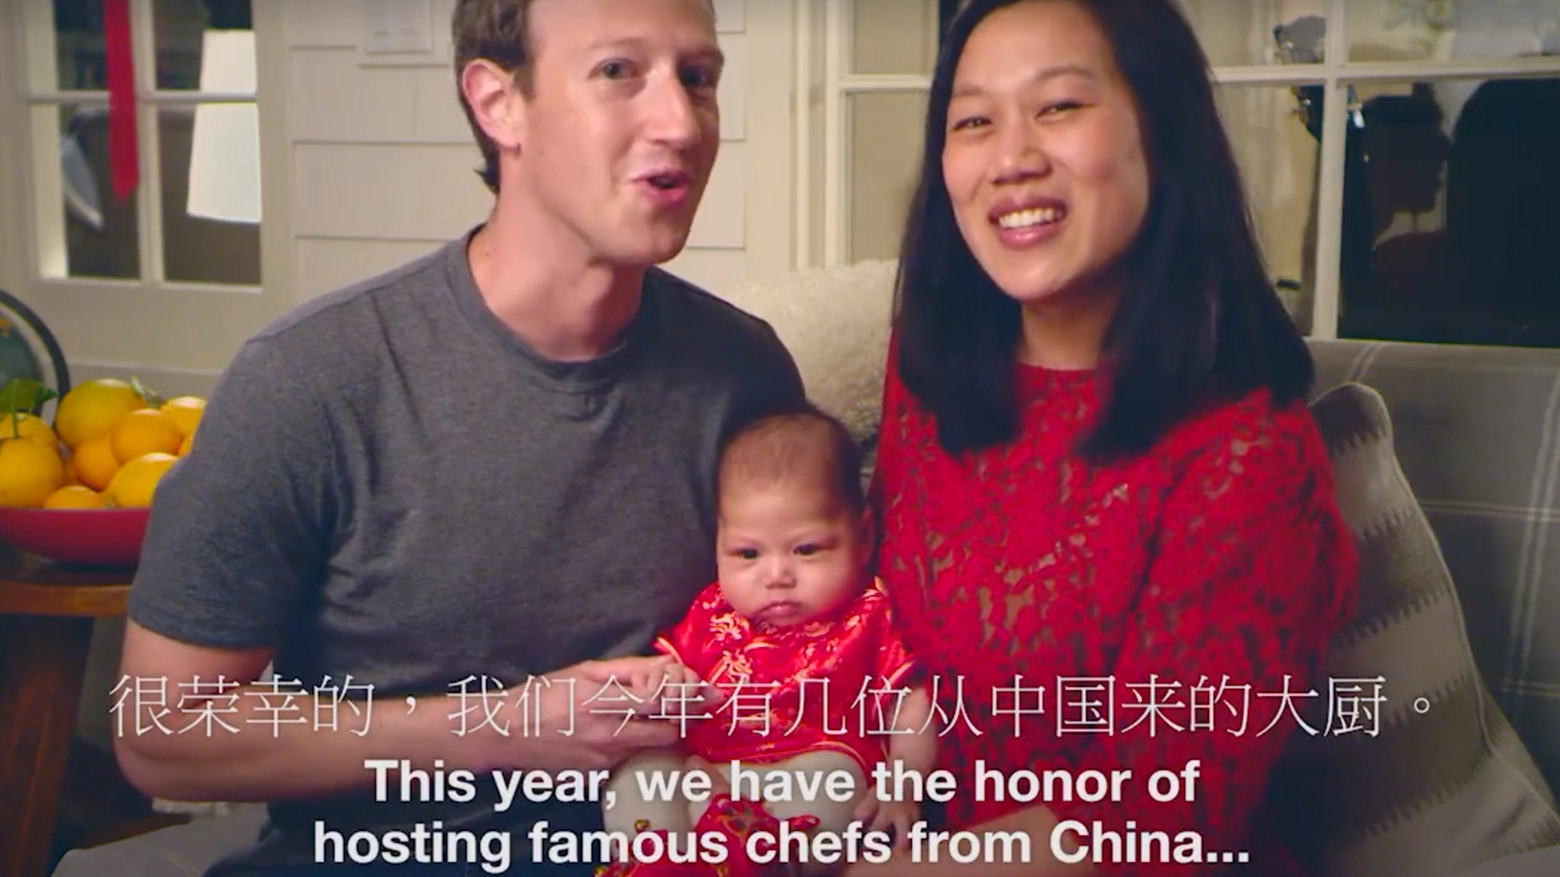 Capodanno cinese, video di auguri della famiglia Zuckerberg (Facebook)